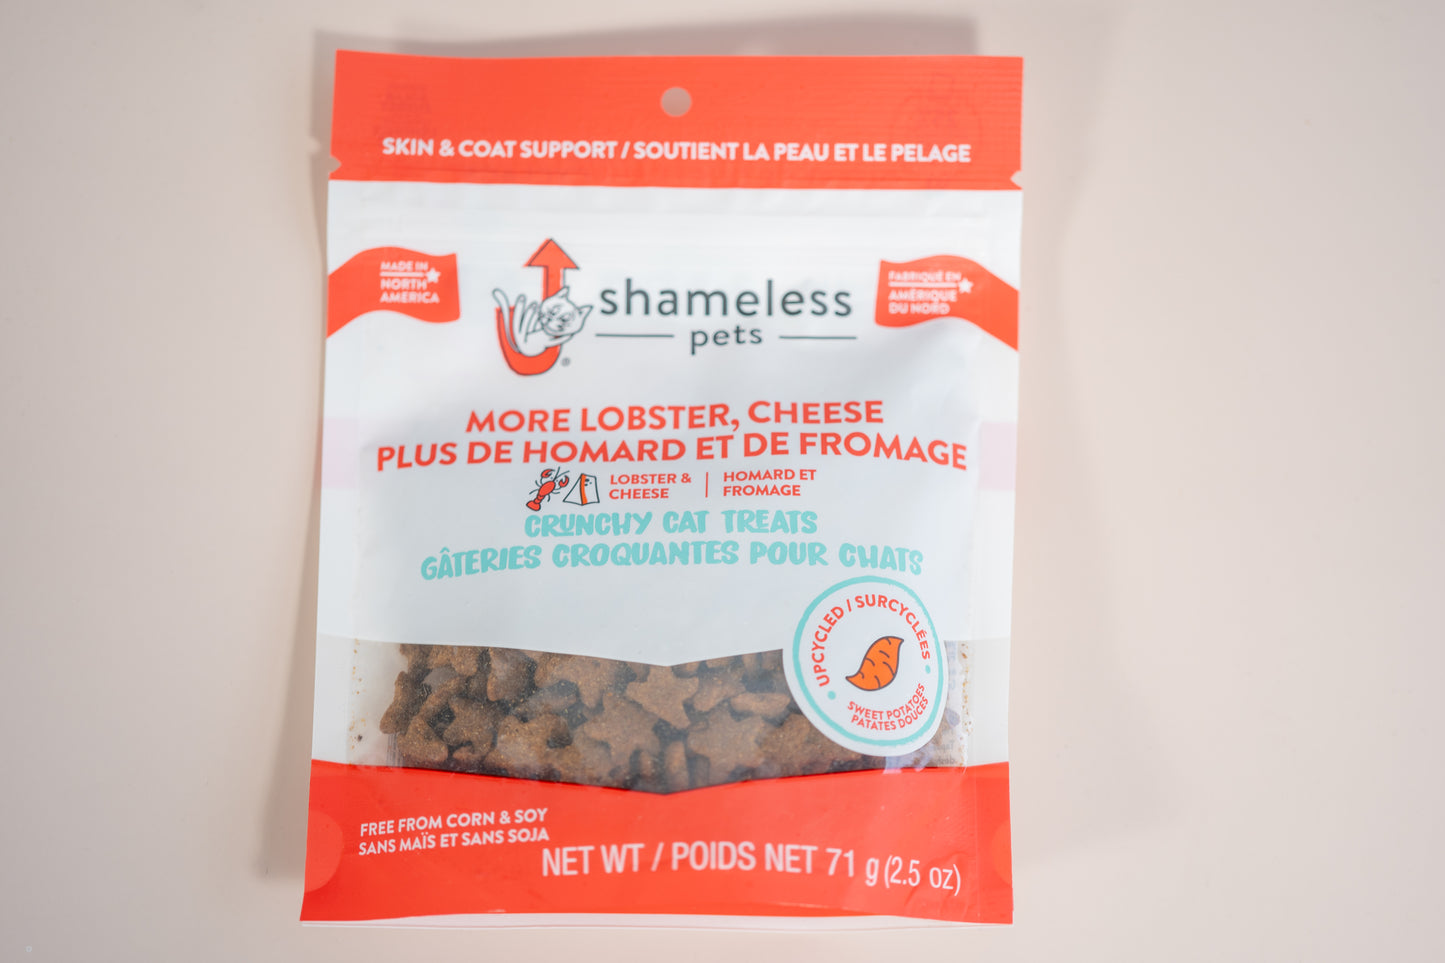 Shameless Pets Plus de homard et fromage regorge de pré et probiotiques pour soutenir la digestion.